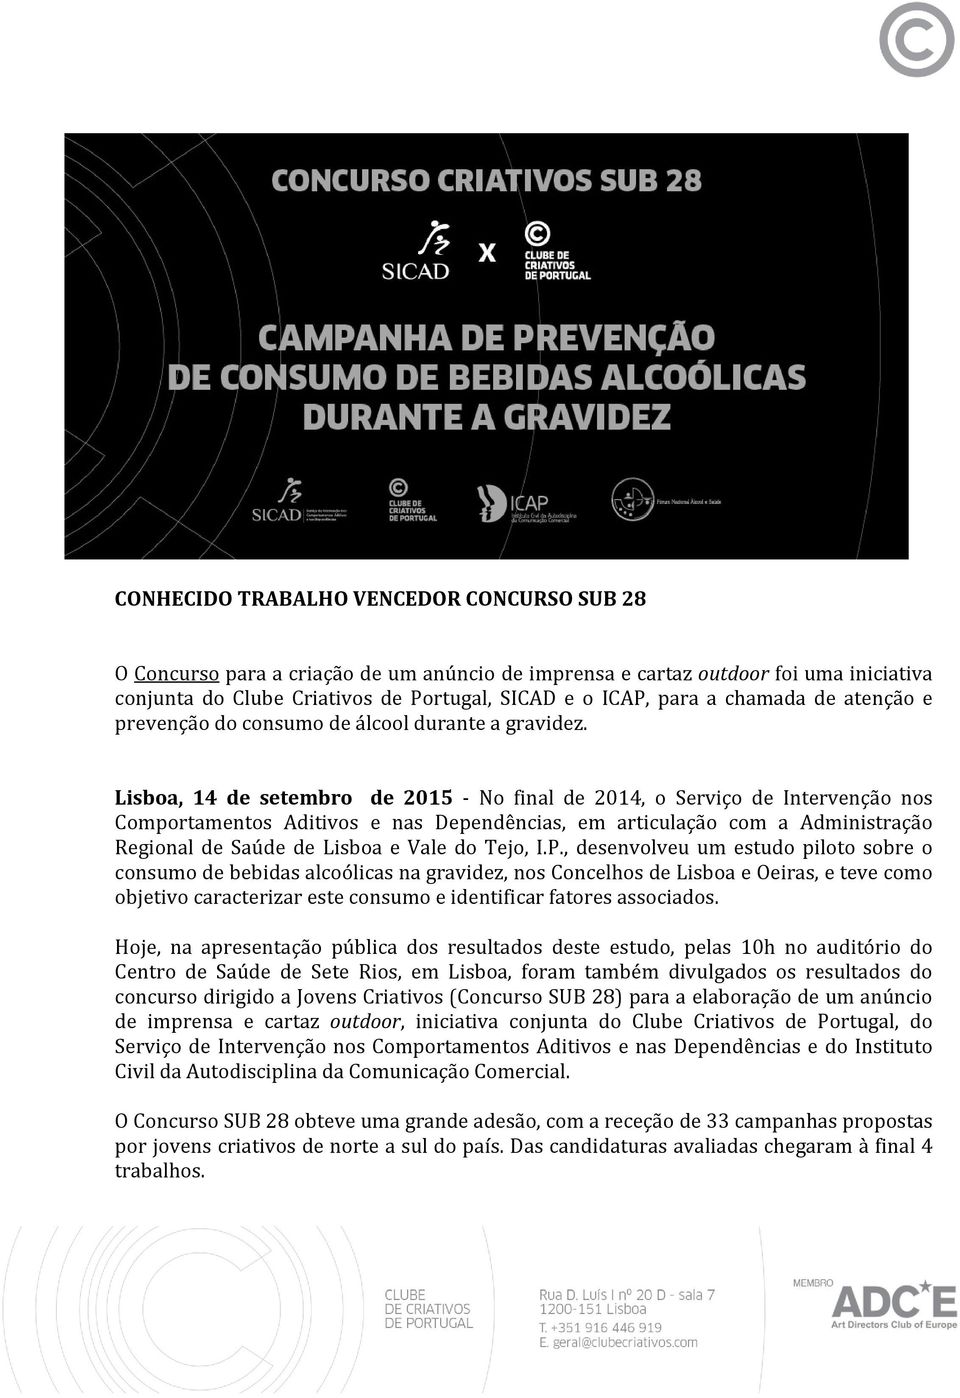 Lisboa, 14 de setembro de 2015 - No final de 2014, o Serviço de Intervenção nos Comportamentos Aditivos e nas Dependências, em articulação com a Administração Regional de Saúde de Lisboa e Vale do